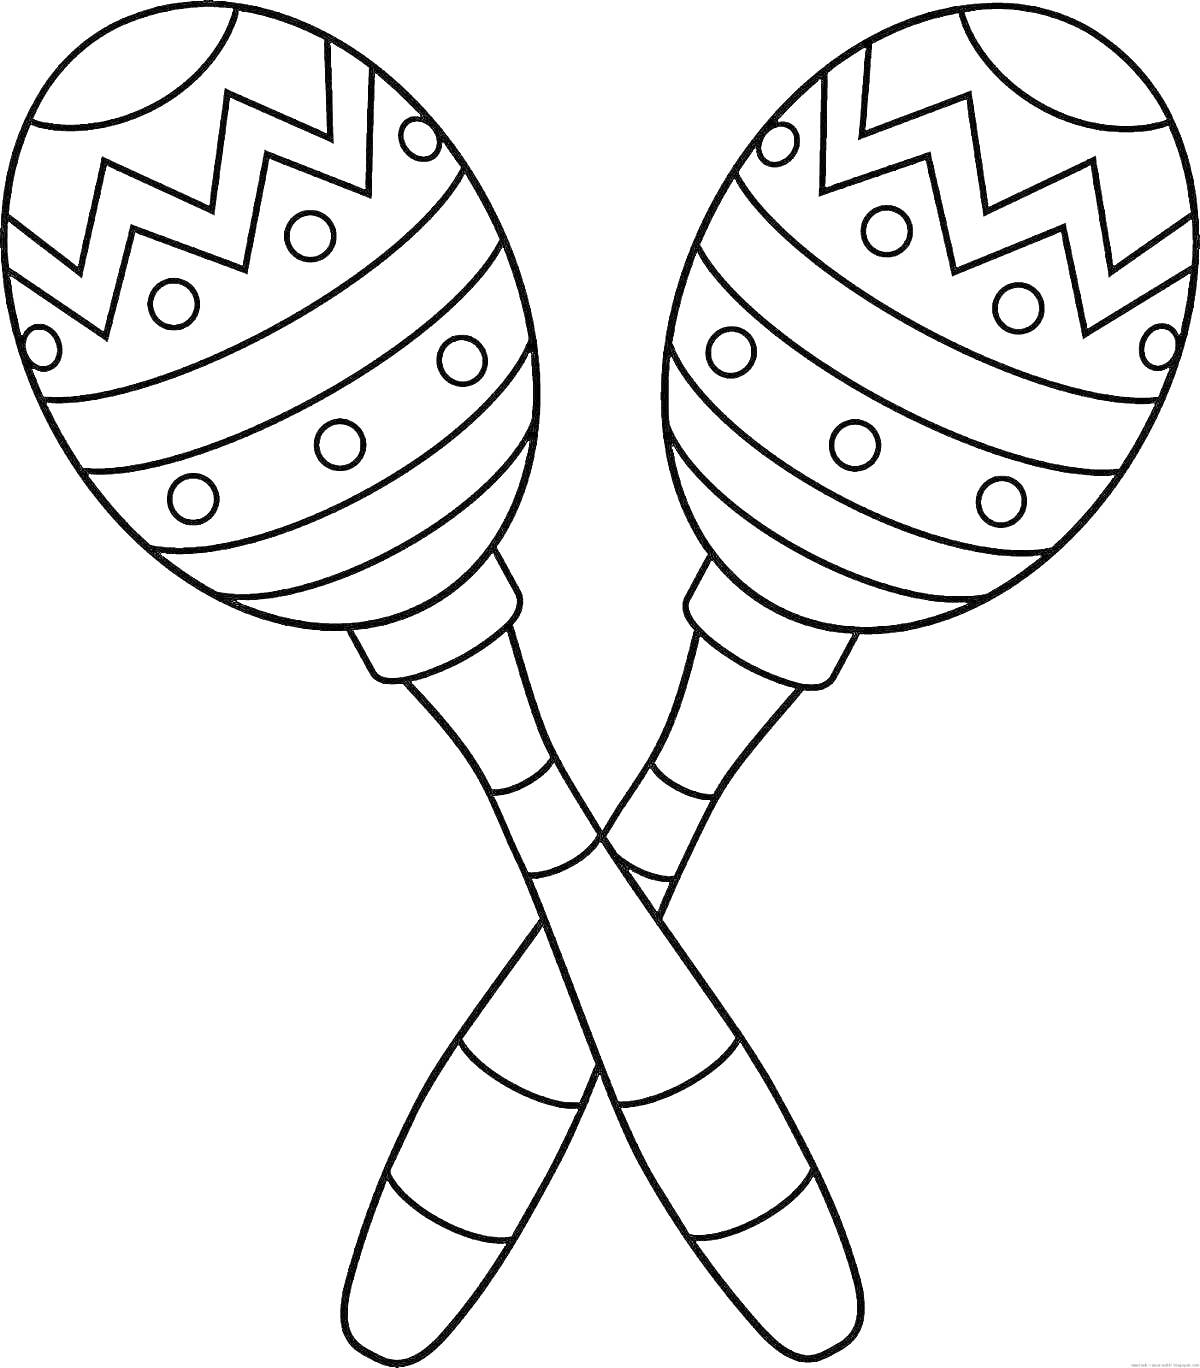 Две раскрашенные ложки-маракасы с узорами (зигзаги и точки)